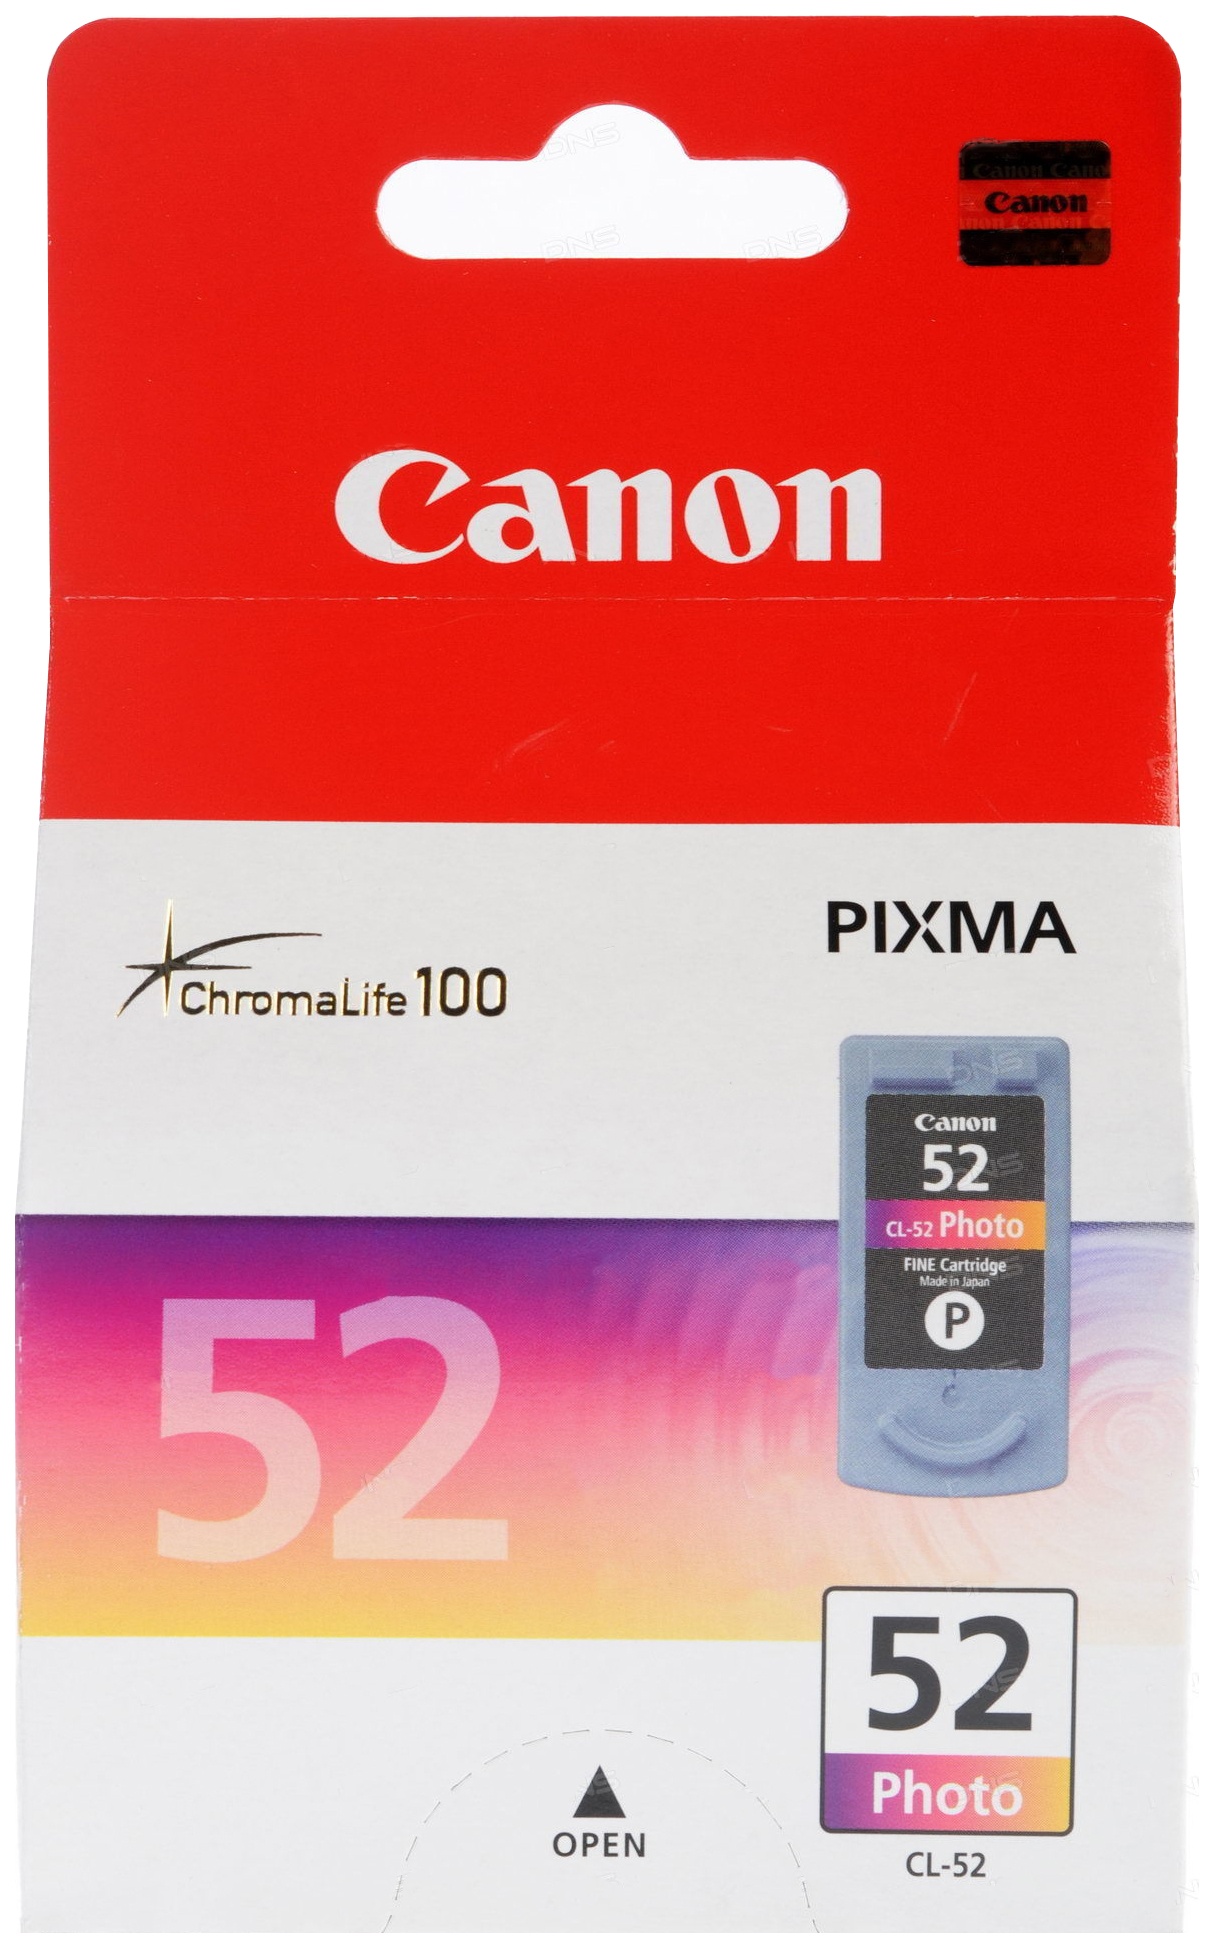 Картридж для струйного принтера Canon CL-52 (0619B001) цветной, оригинал